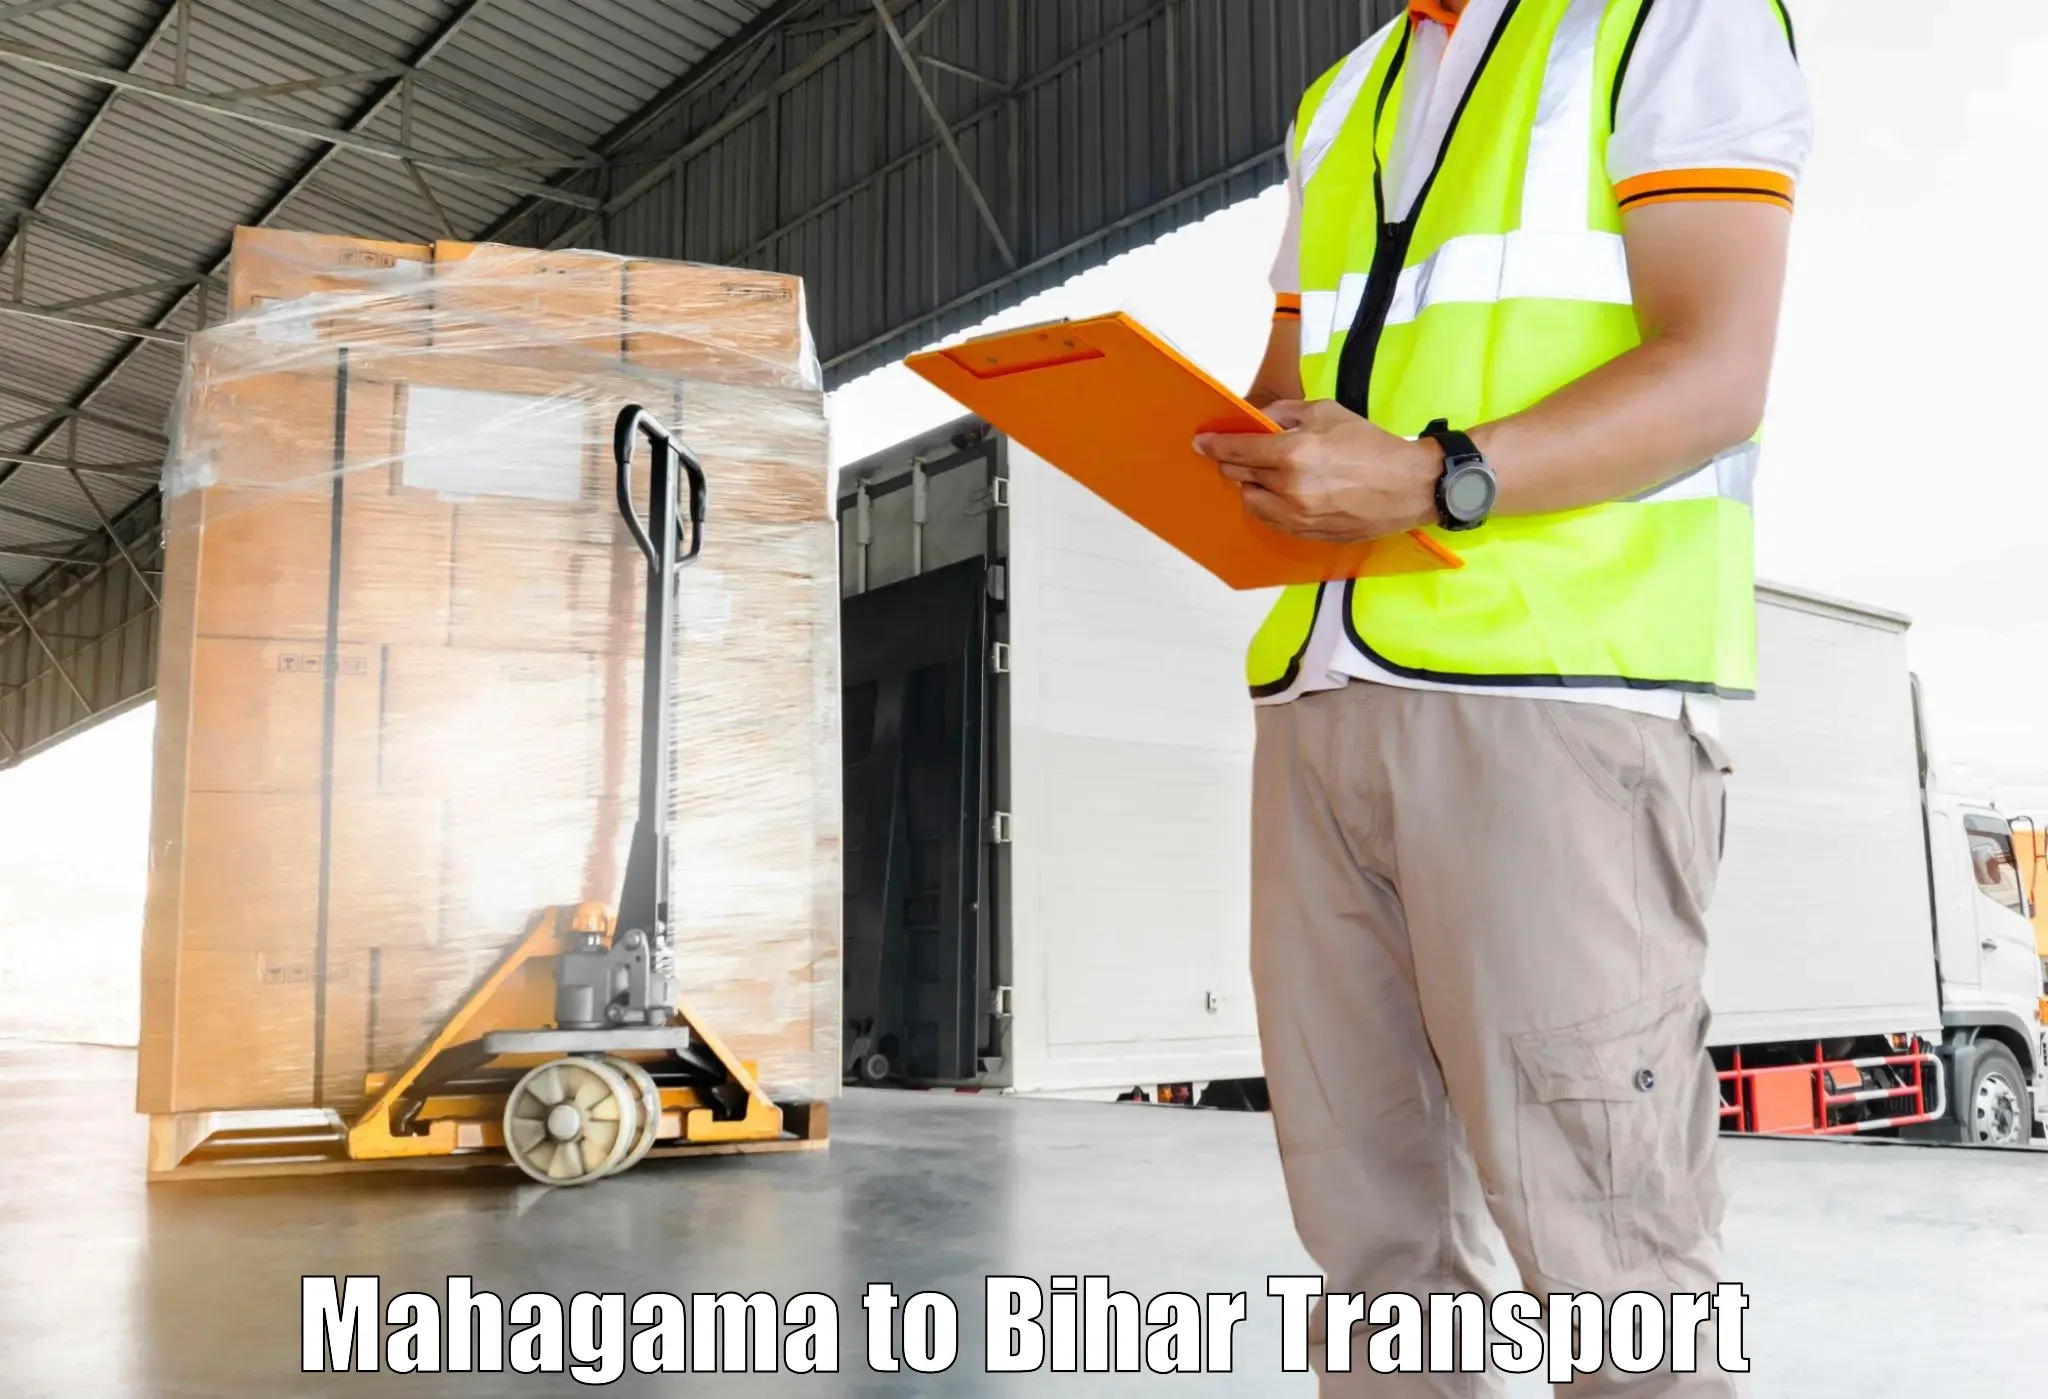 Cargo train transport services Mahagama to Jalalgarh